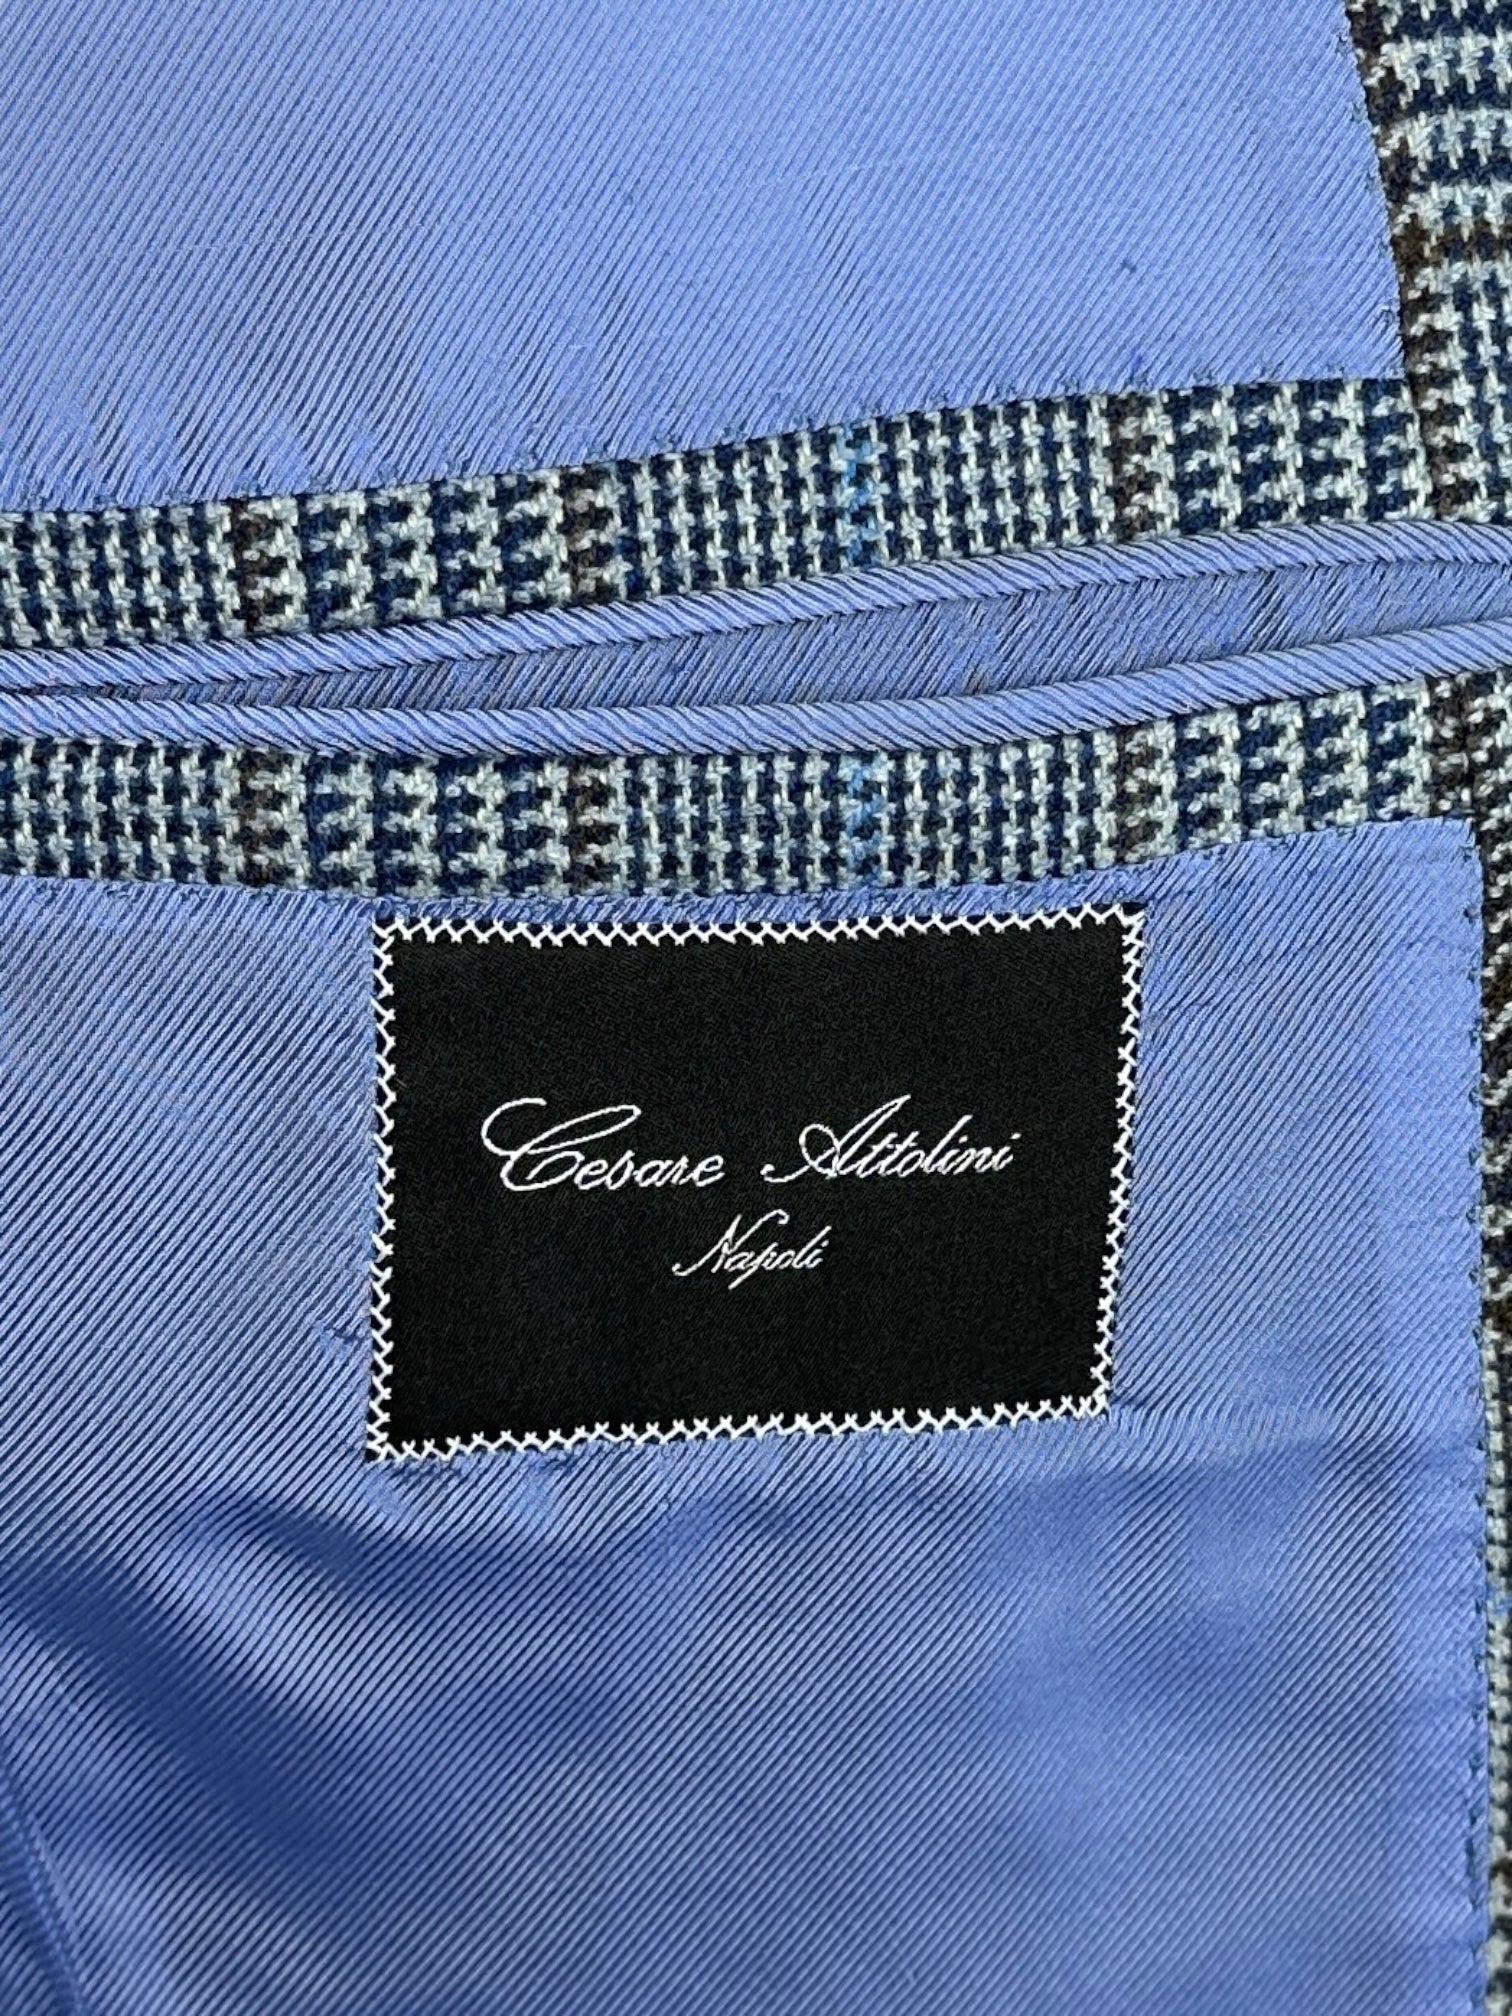 Cesare Attolini Light Blue Cashmere Jacket